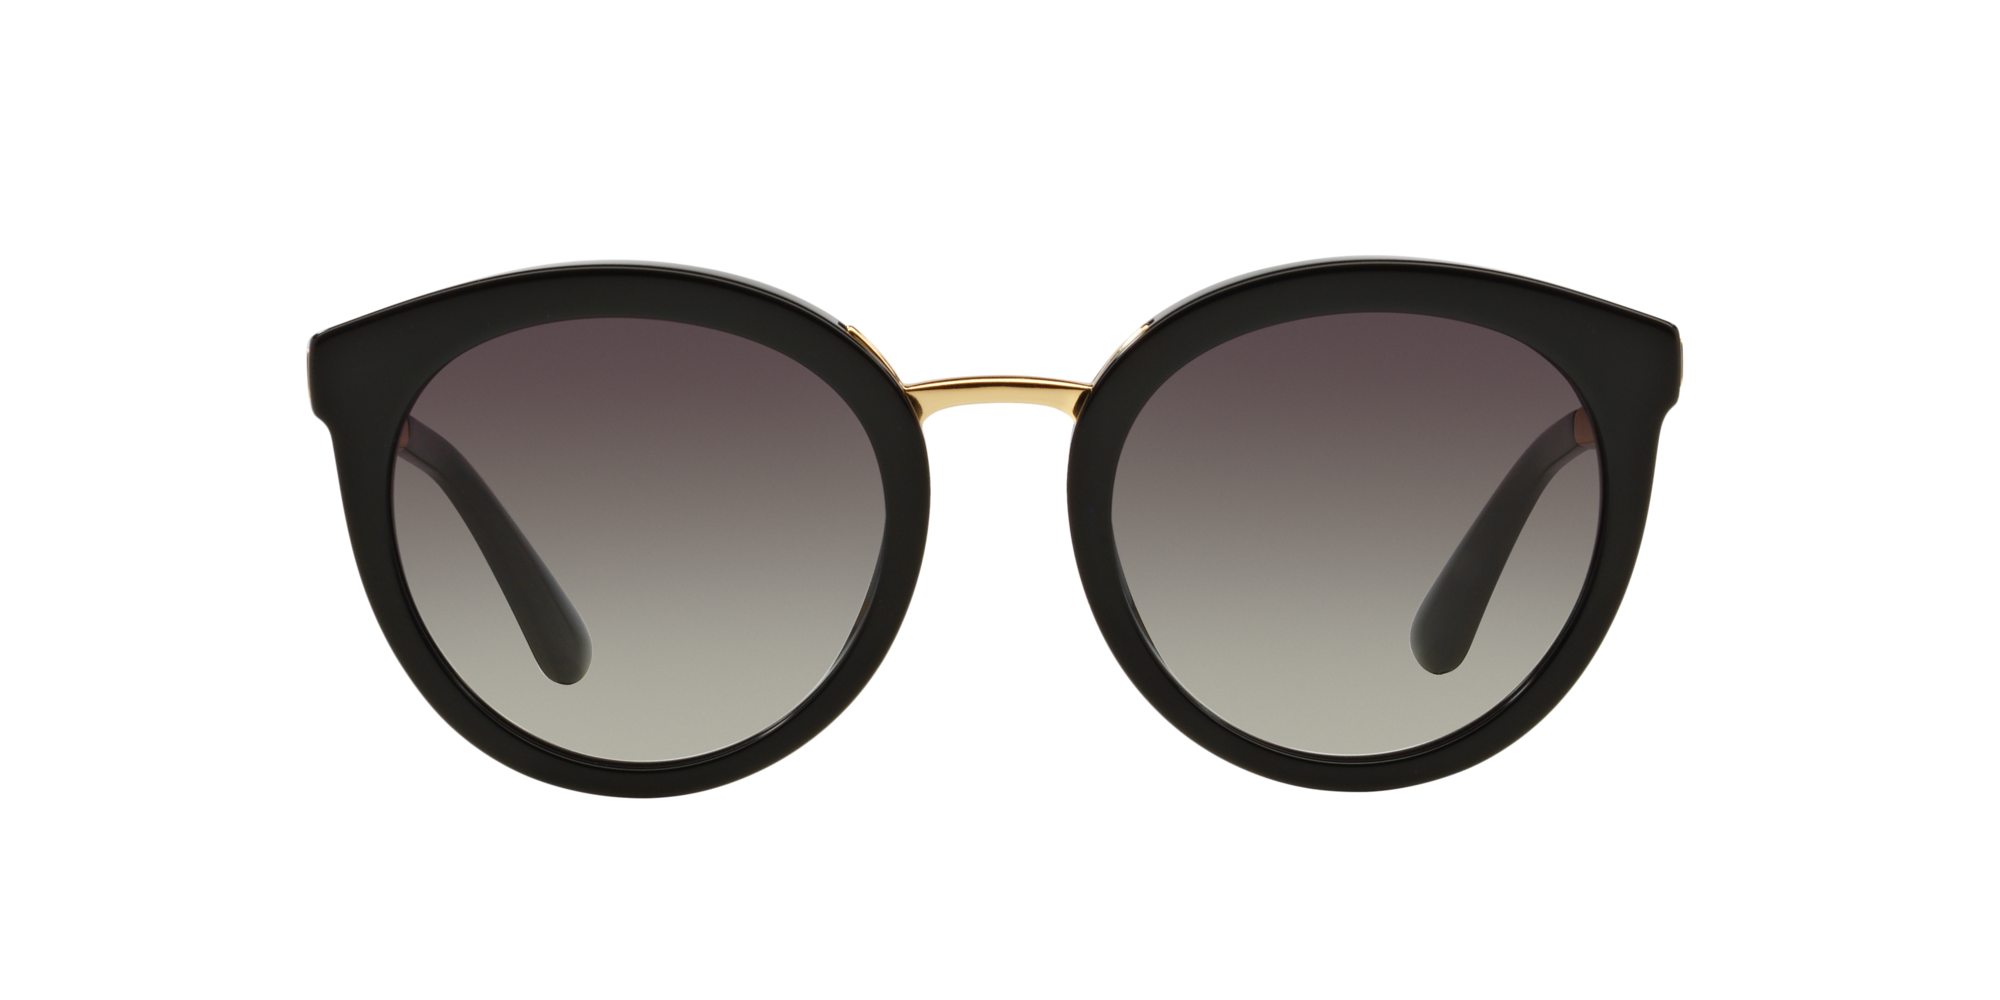 Dolce & Gabbana Sonnenbrille in schwarz DG4268 501/8G 52 